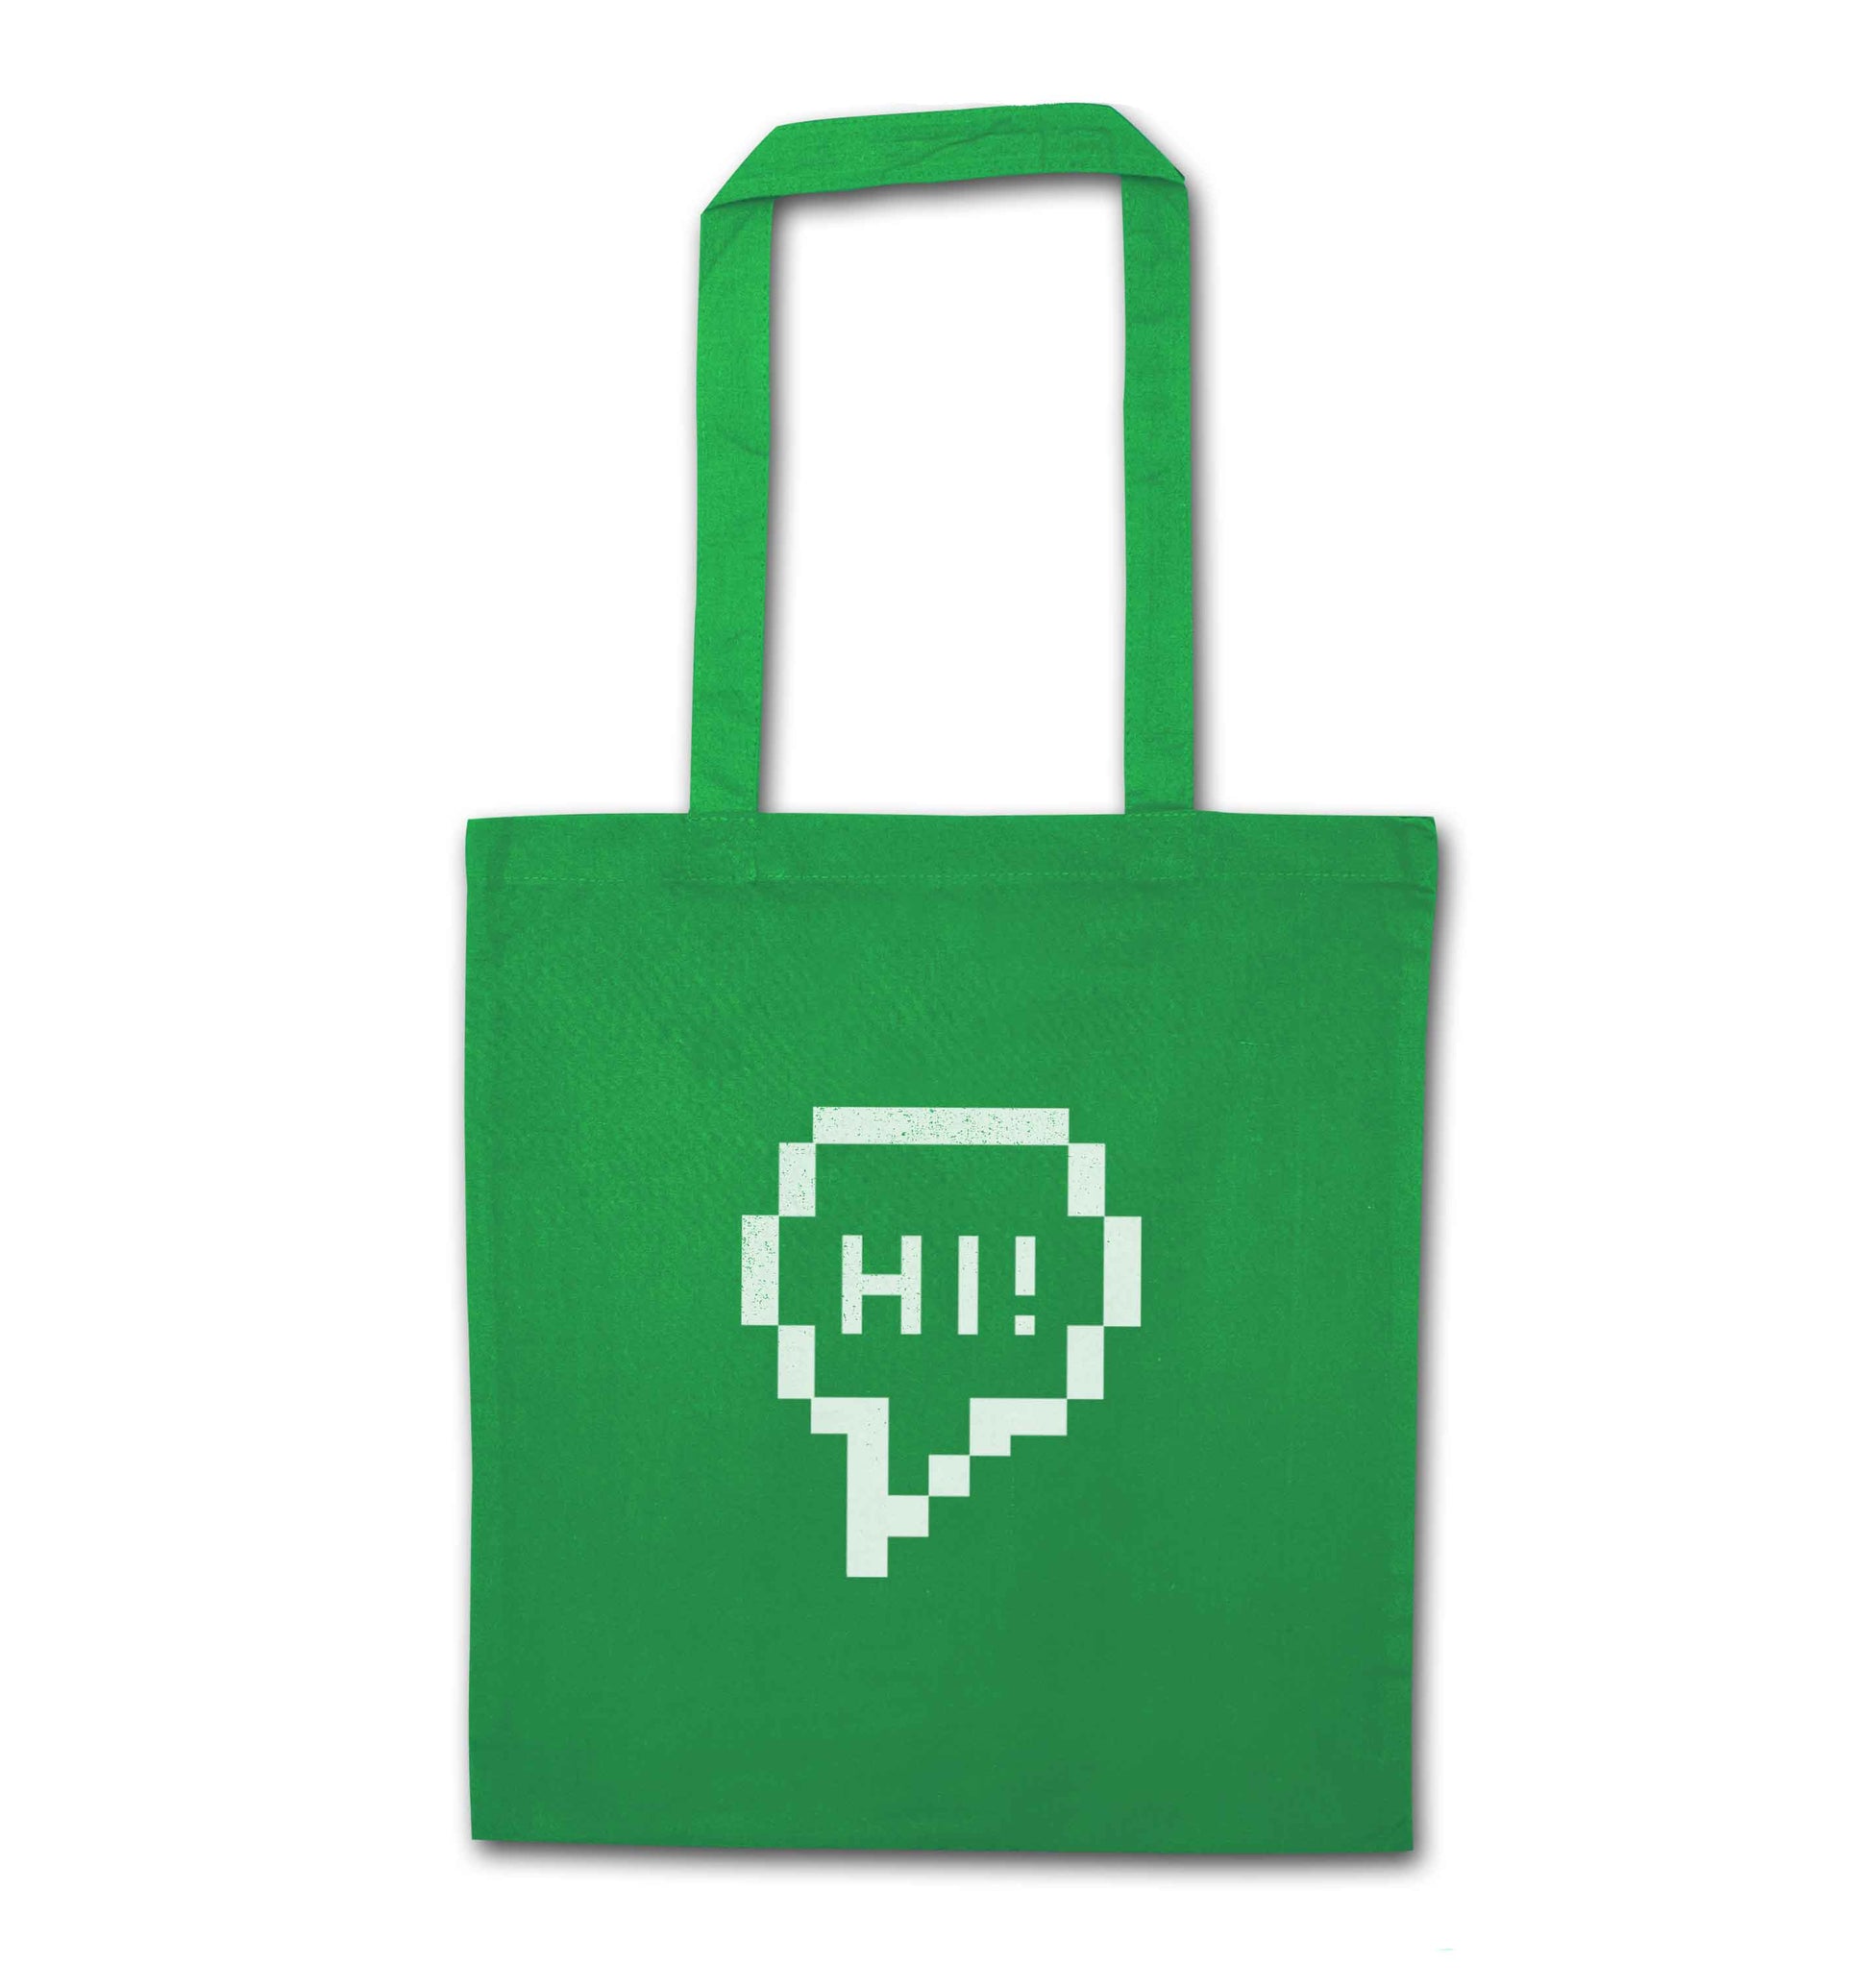 Hi green tote bag